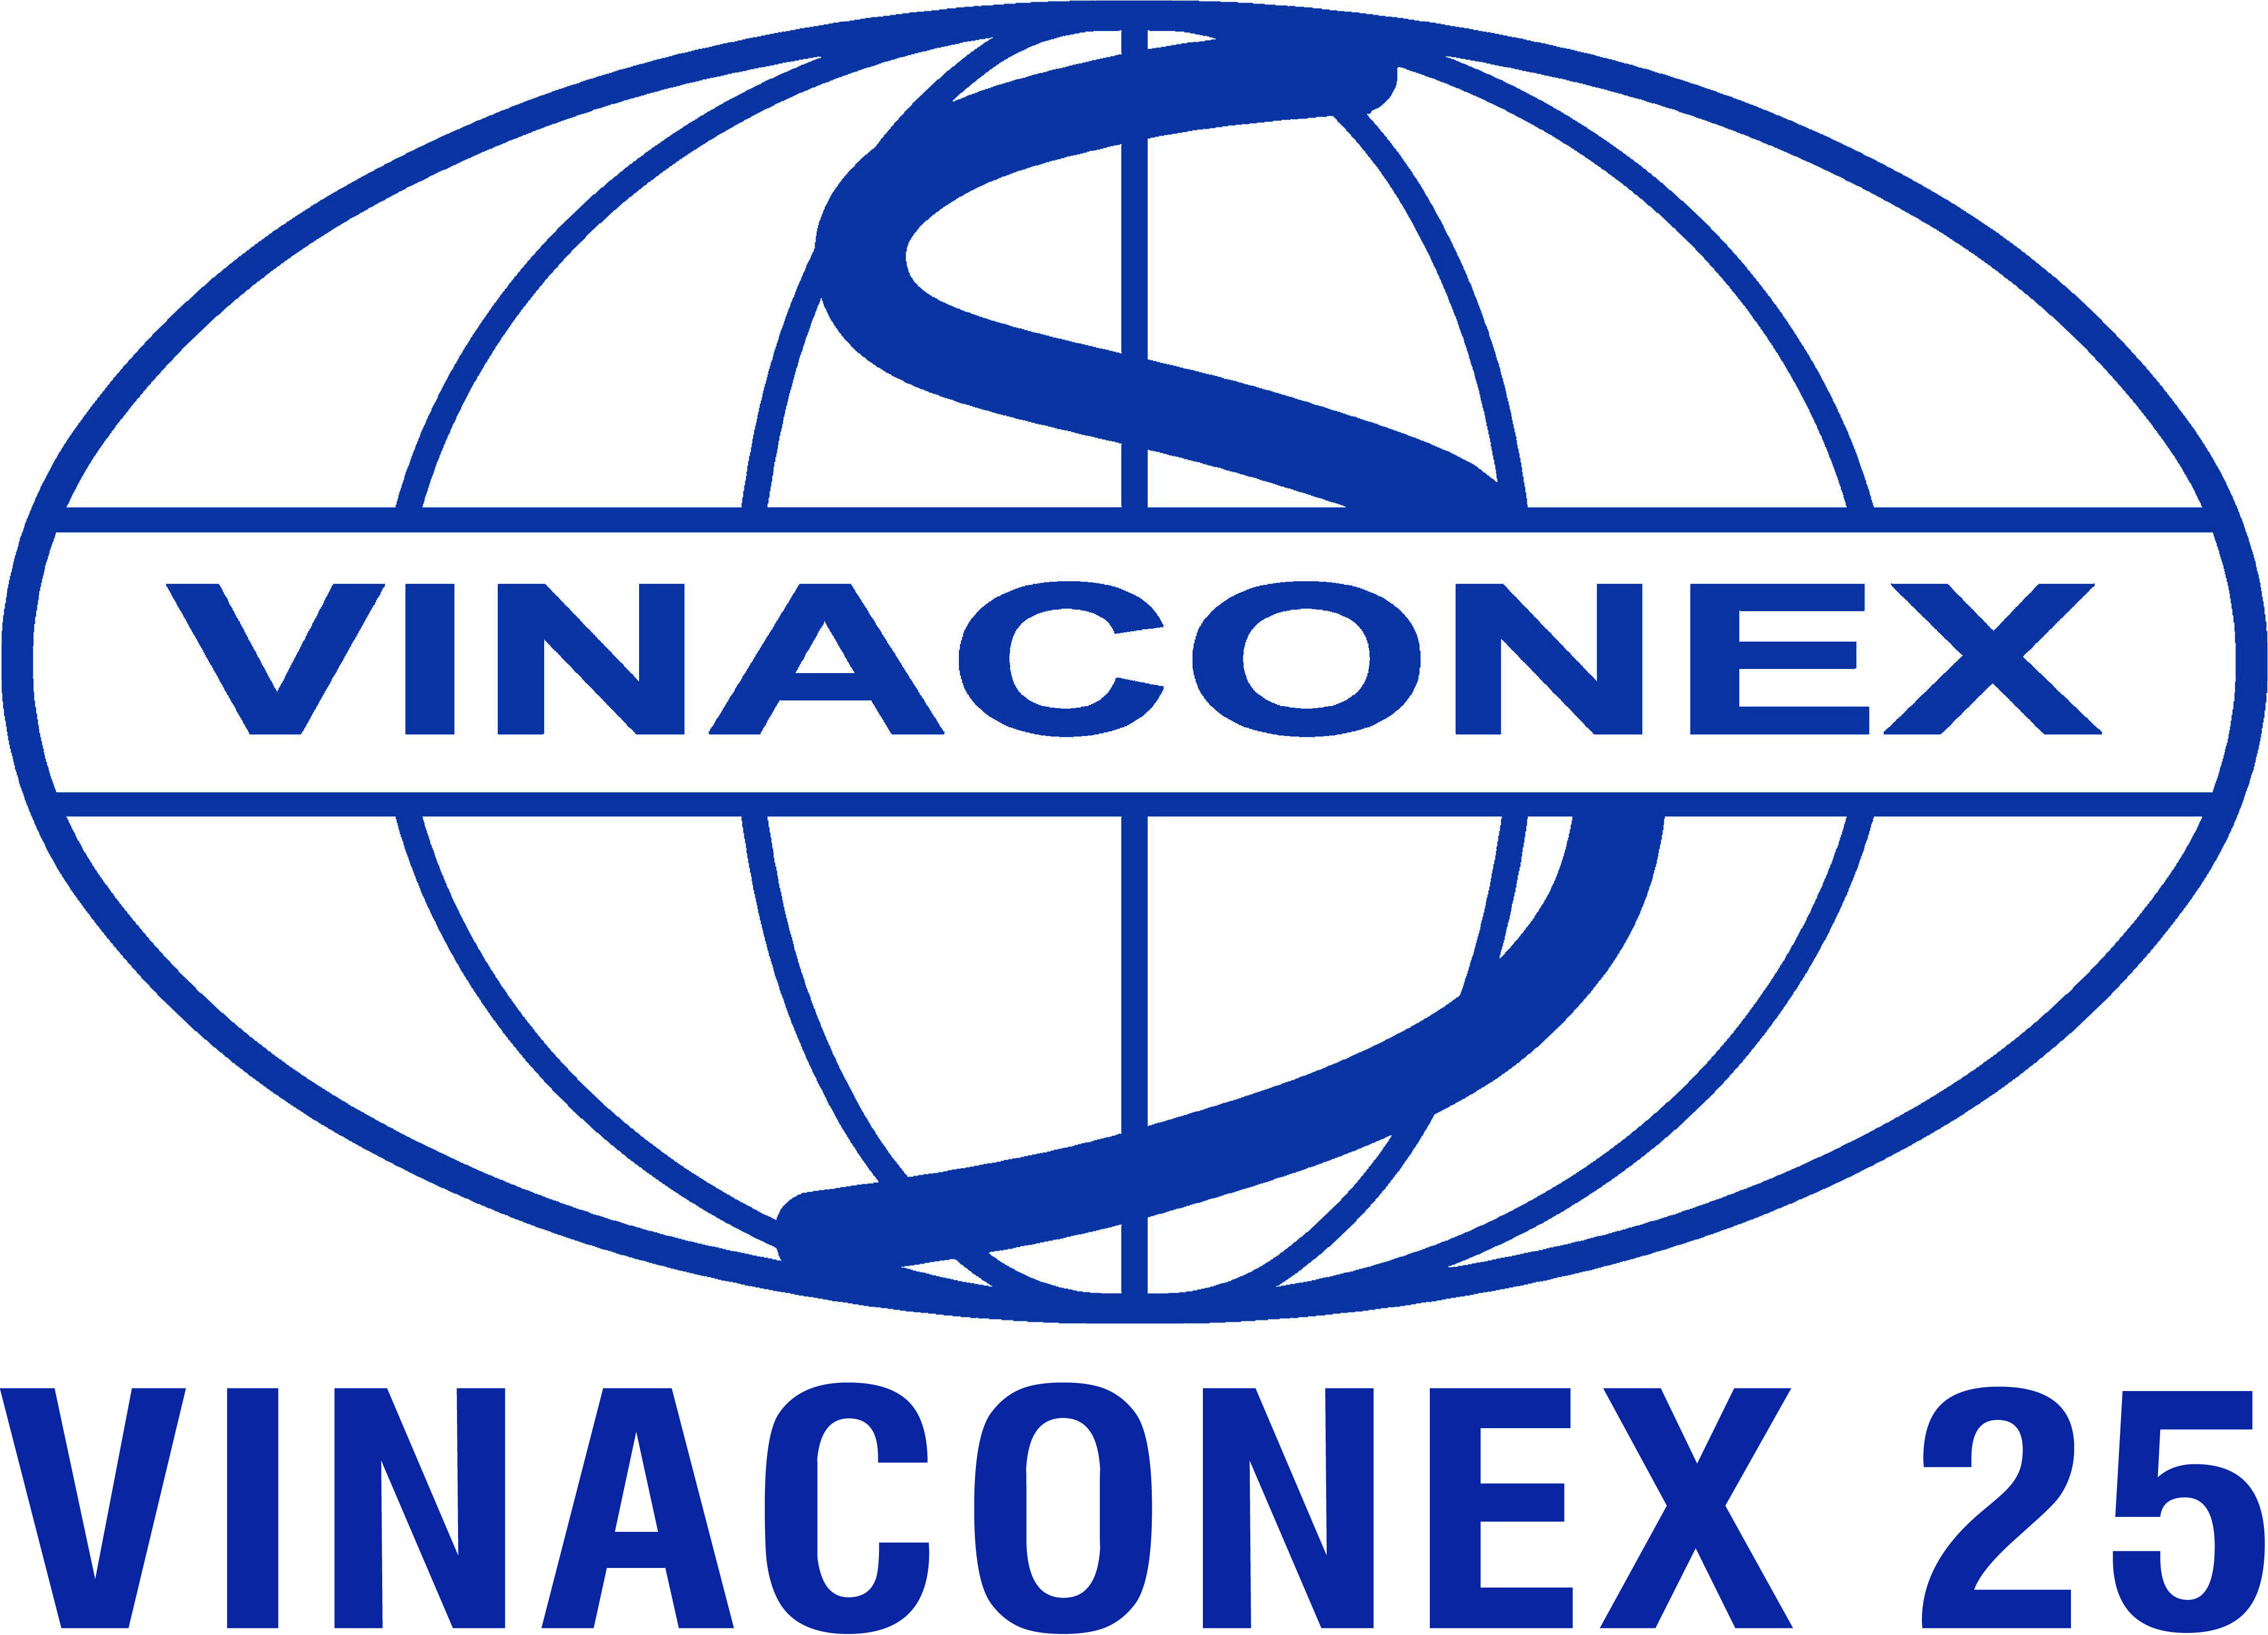 Vinaconex 25 sẽ tăng vốn gấp đôi để đầu tư dự án